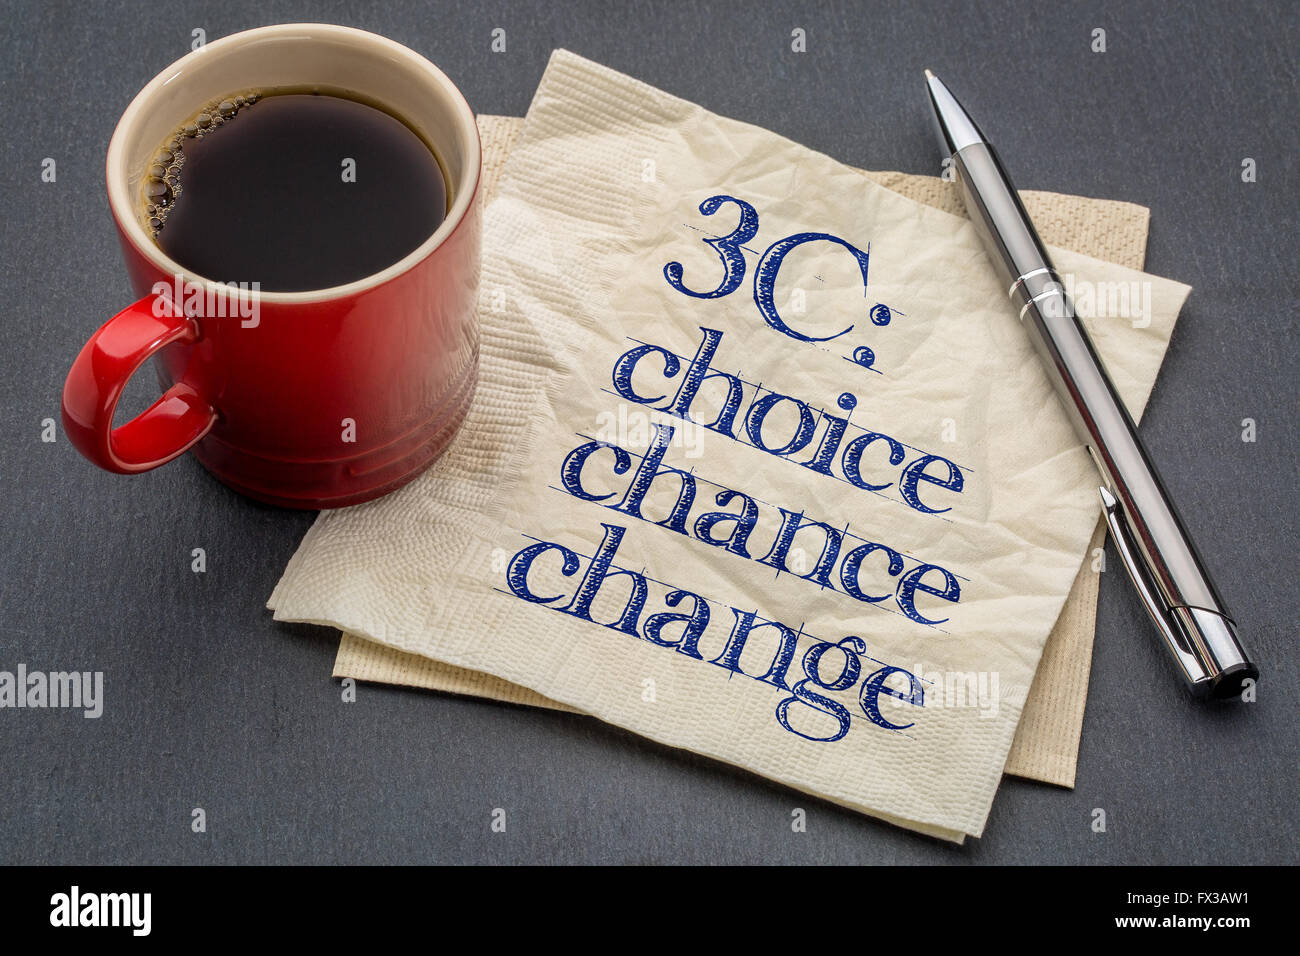 3C concept - choix, chance et le changement- écriture sur une serviette avec tasse de café contre l'arrière-plan gris ardoise Banque D'Images